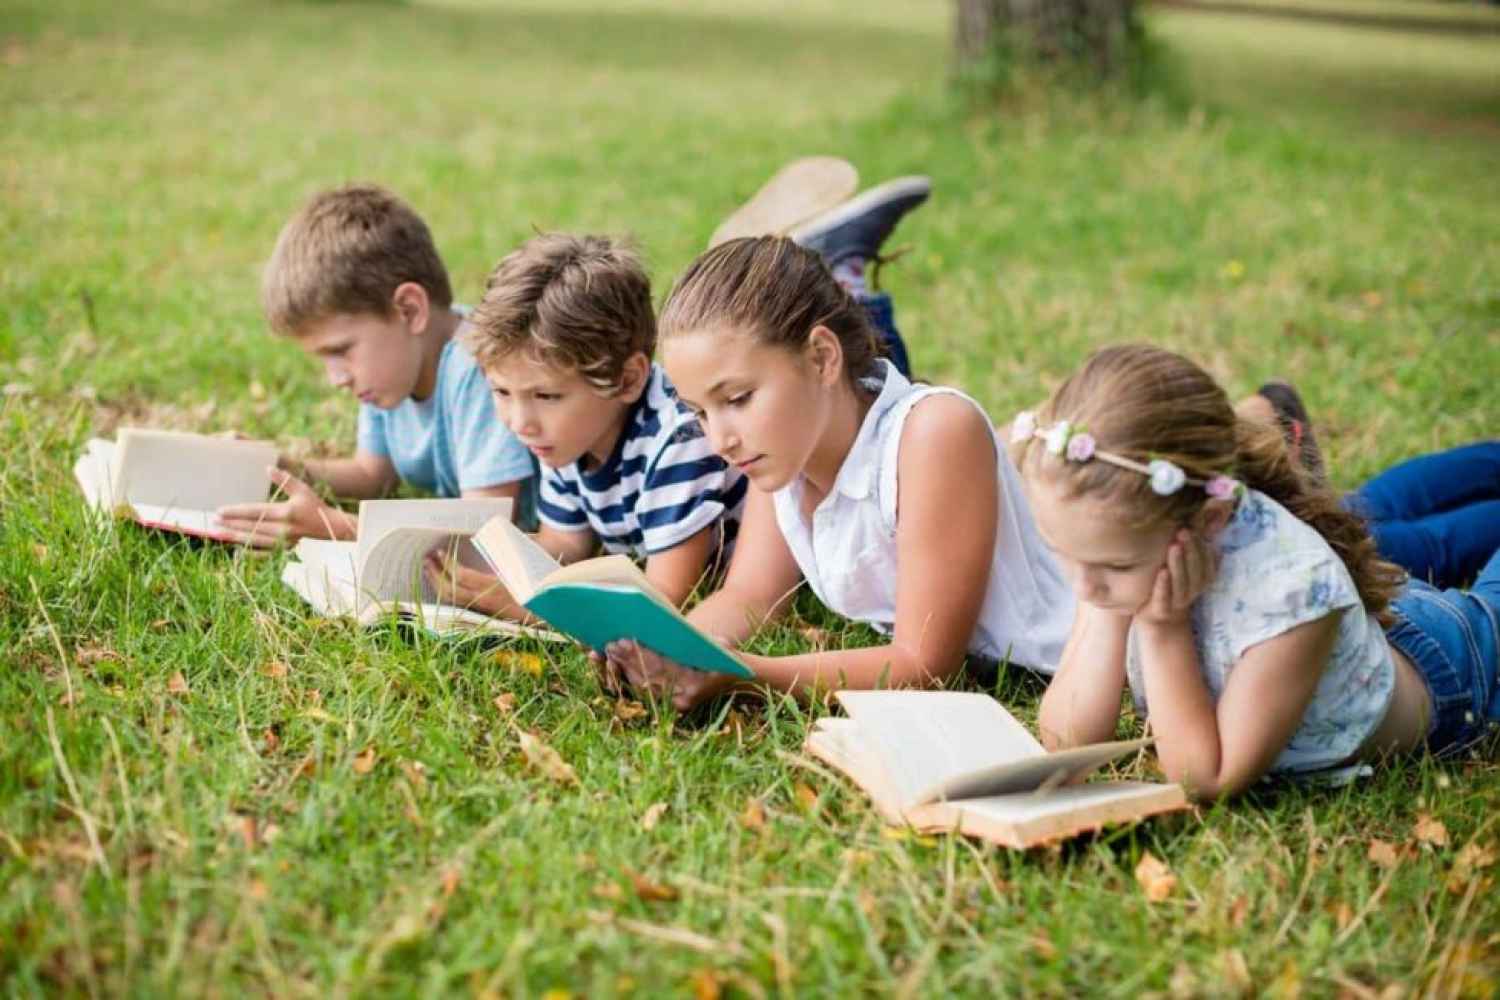 La Junta facilita lectura de estudiantes en verano